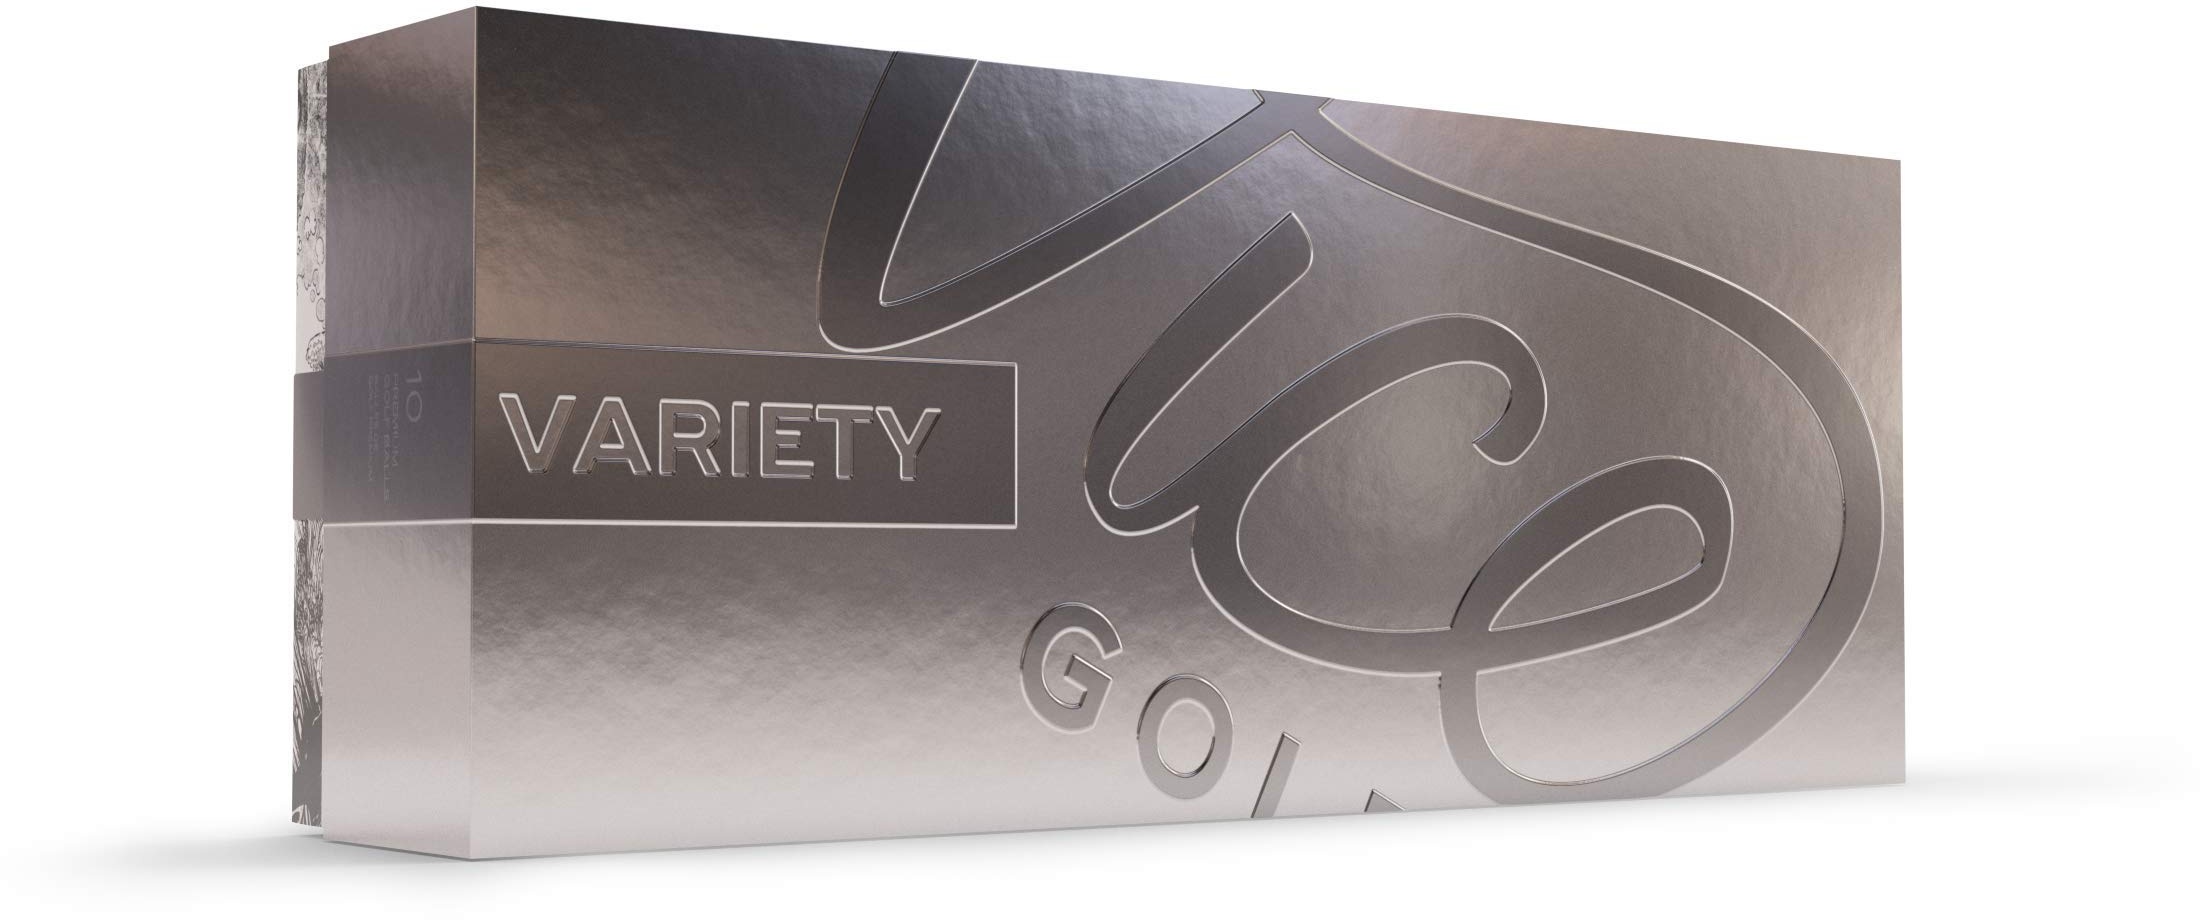 Vice Golf Variety Pack | 10 Golf Bälle | Jedes Modell | Enthält Pro Plus, Pro, Pro Soft, Tour, Drive | Eignet Sich hervorragend als Geschenk oder zum risikofreien Testen